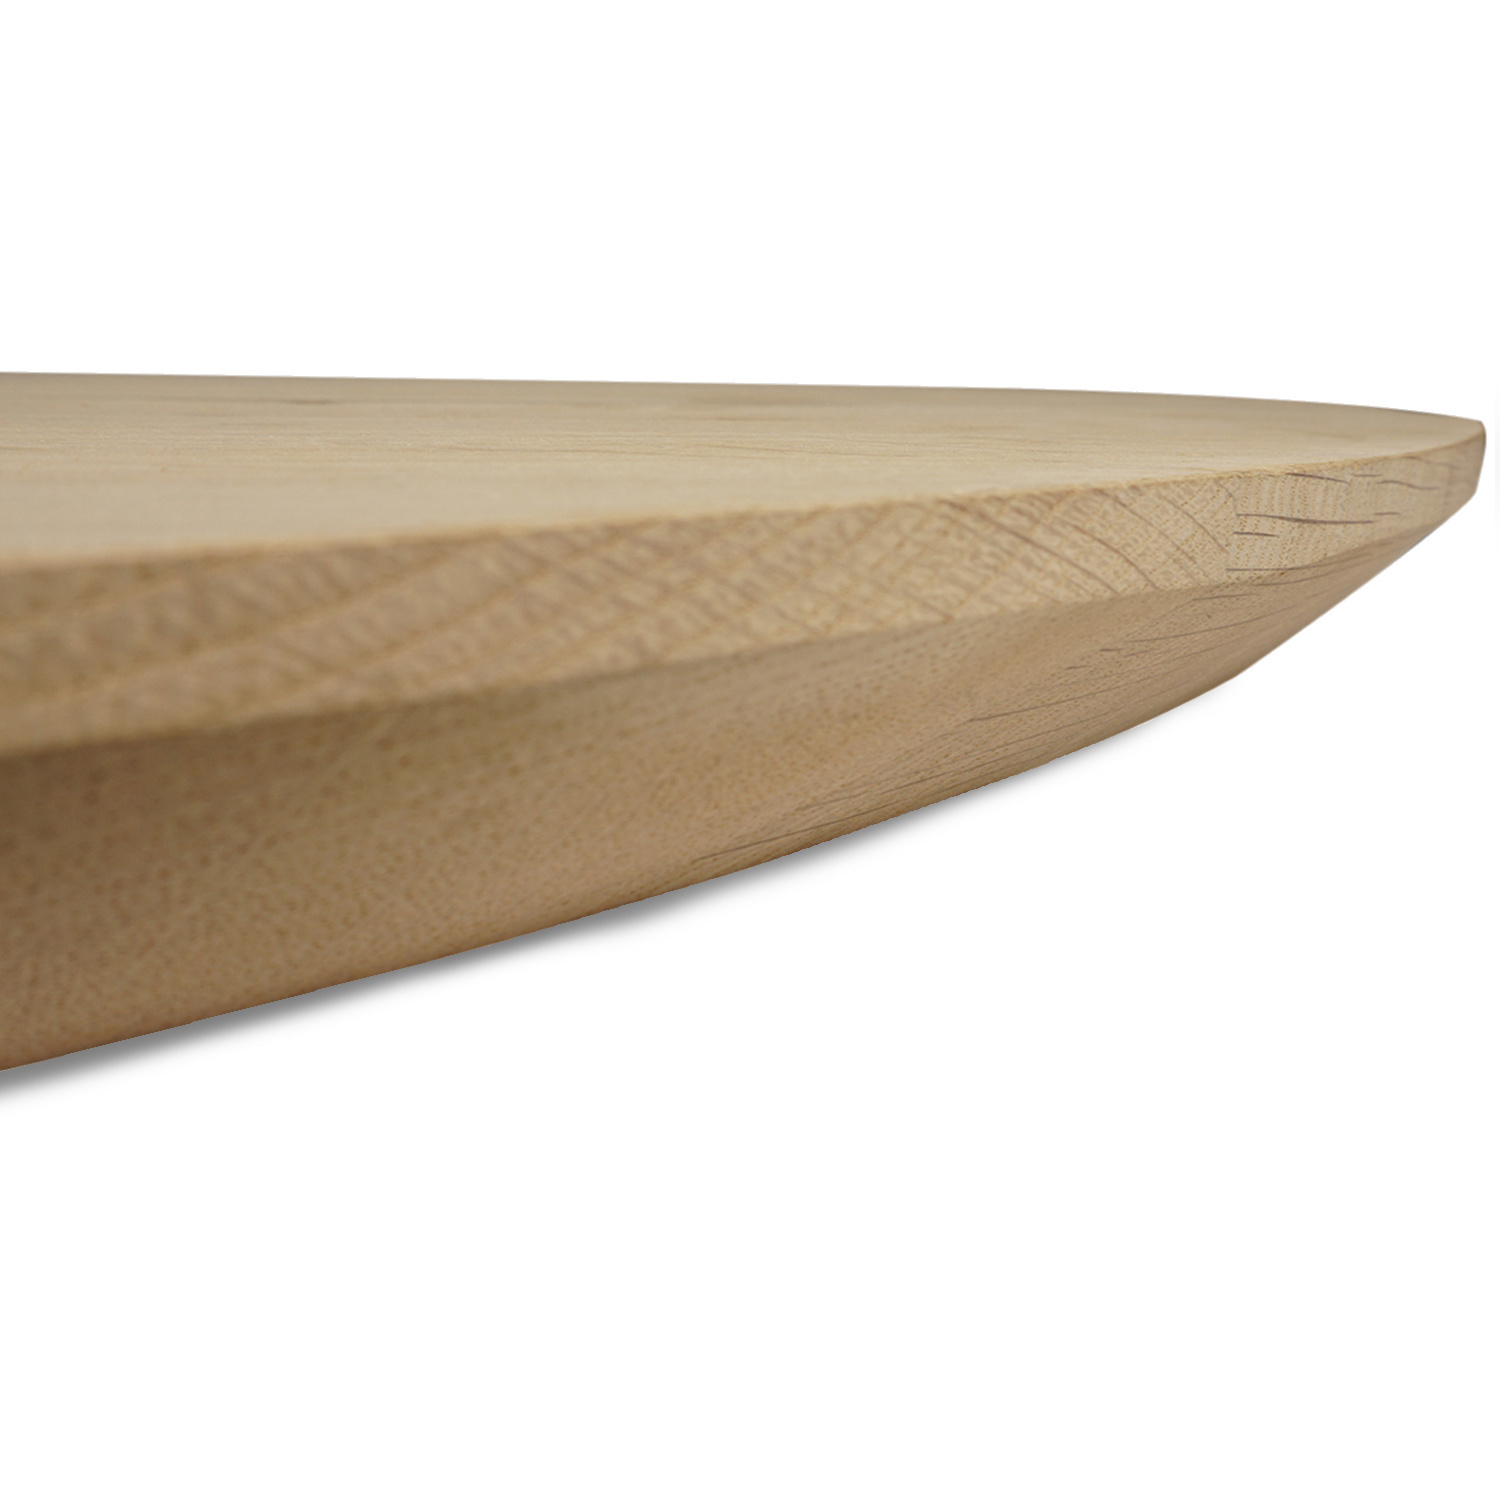  Tischplatte Eiche oval - 4 cm dick - Eichenholz A-Qualität - Ellipse Eiche Tischplatte massiv - HF 8-12%